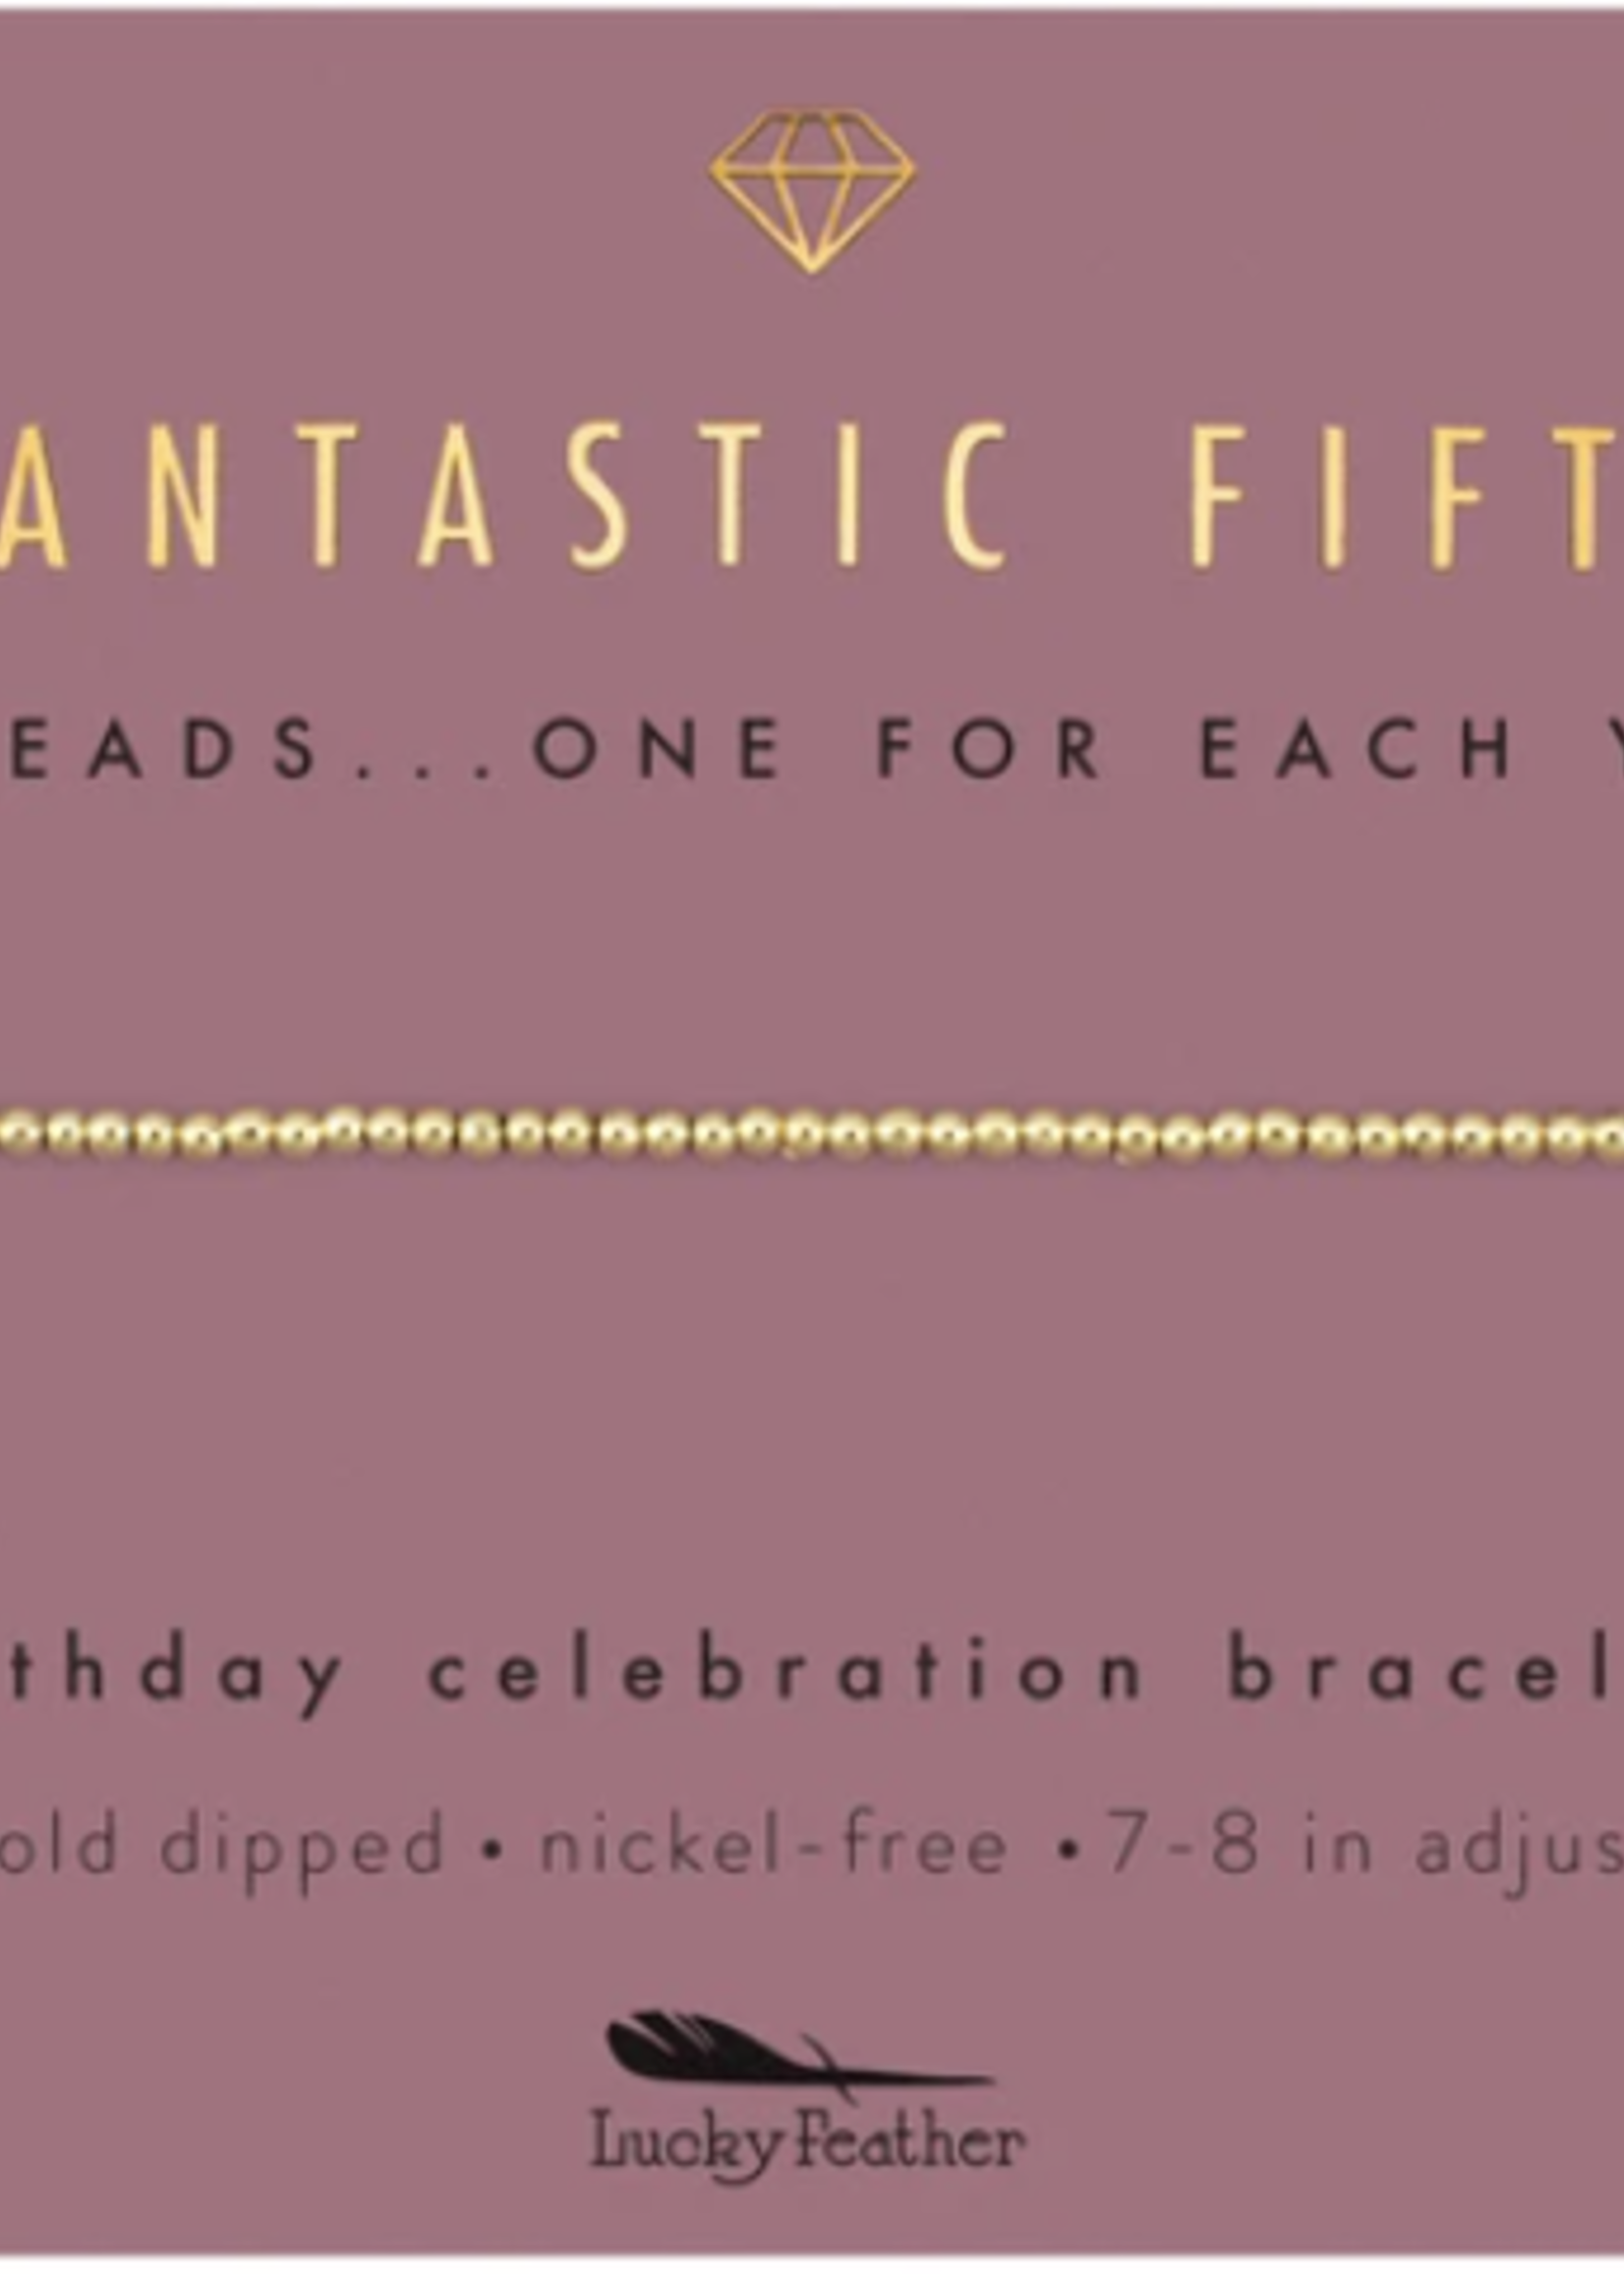 lucky feather Celebration Bracelets